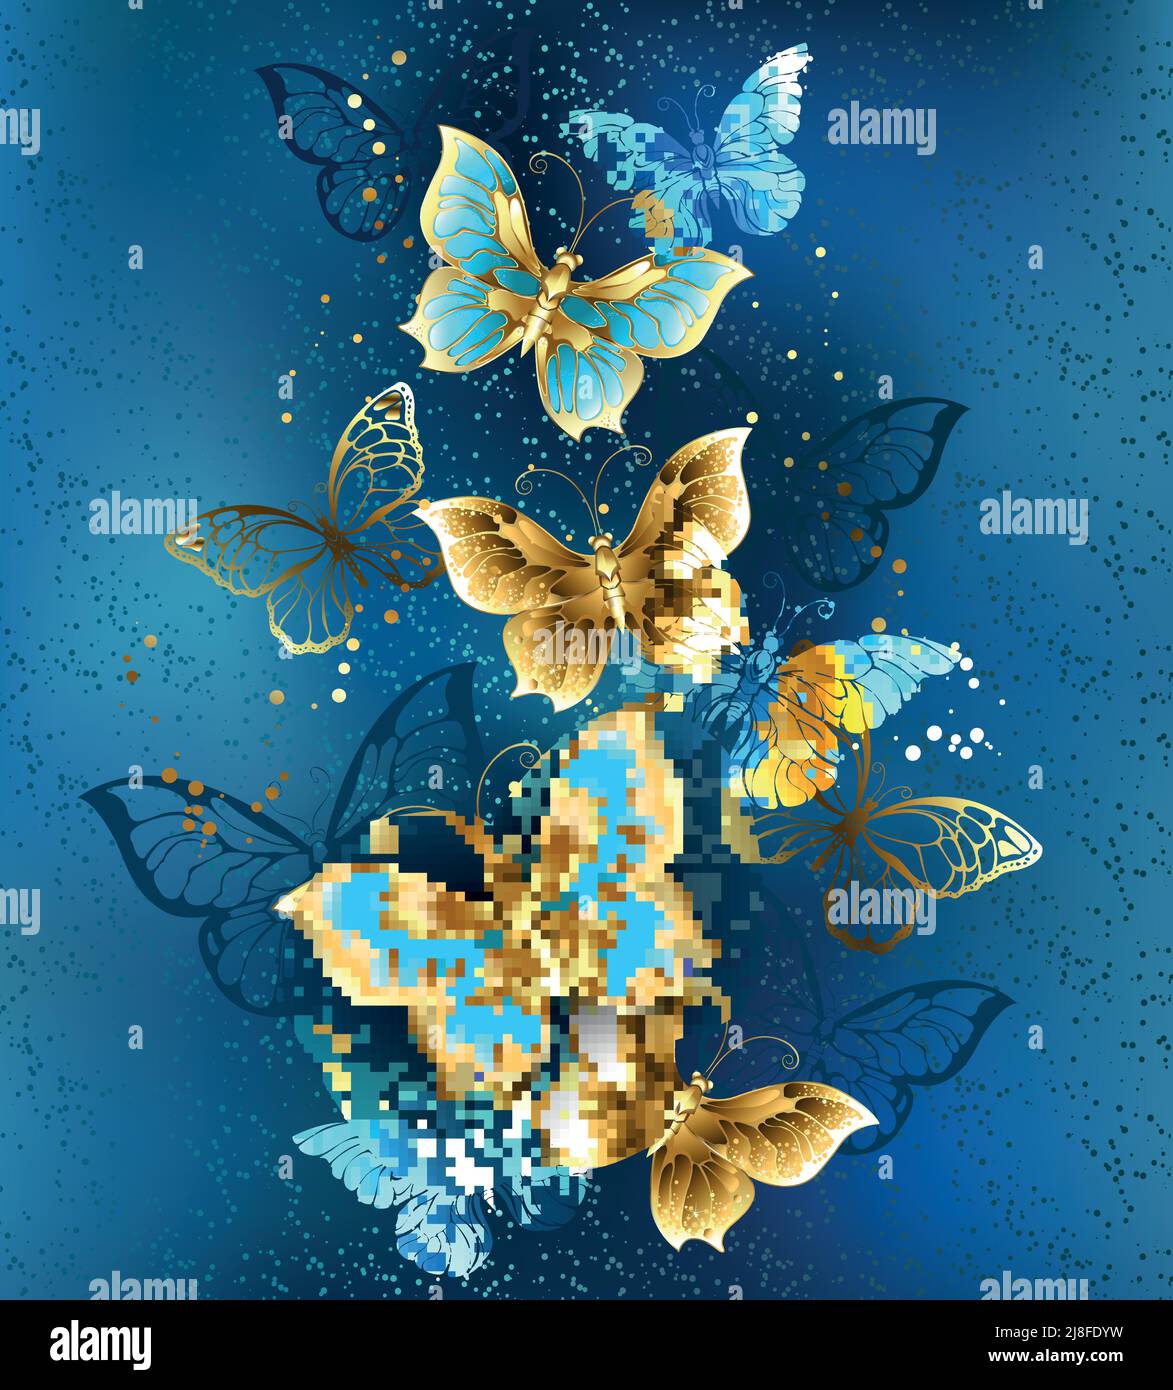 Composición de vuelo, joyas, oro y mariposas oscuras sobre fondo de joyas texturizadas. Mariposa dorada. Ilustración del Vector